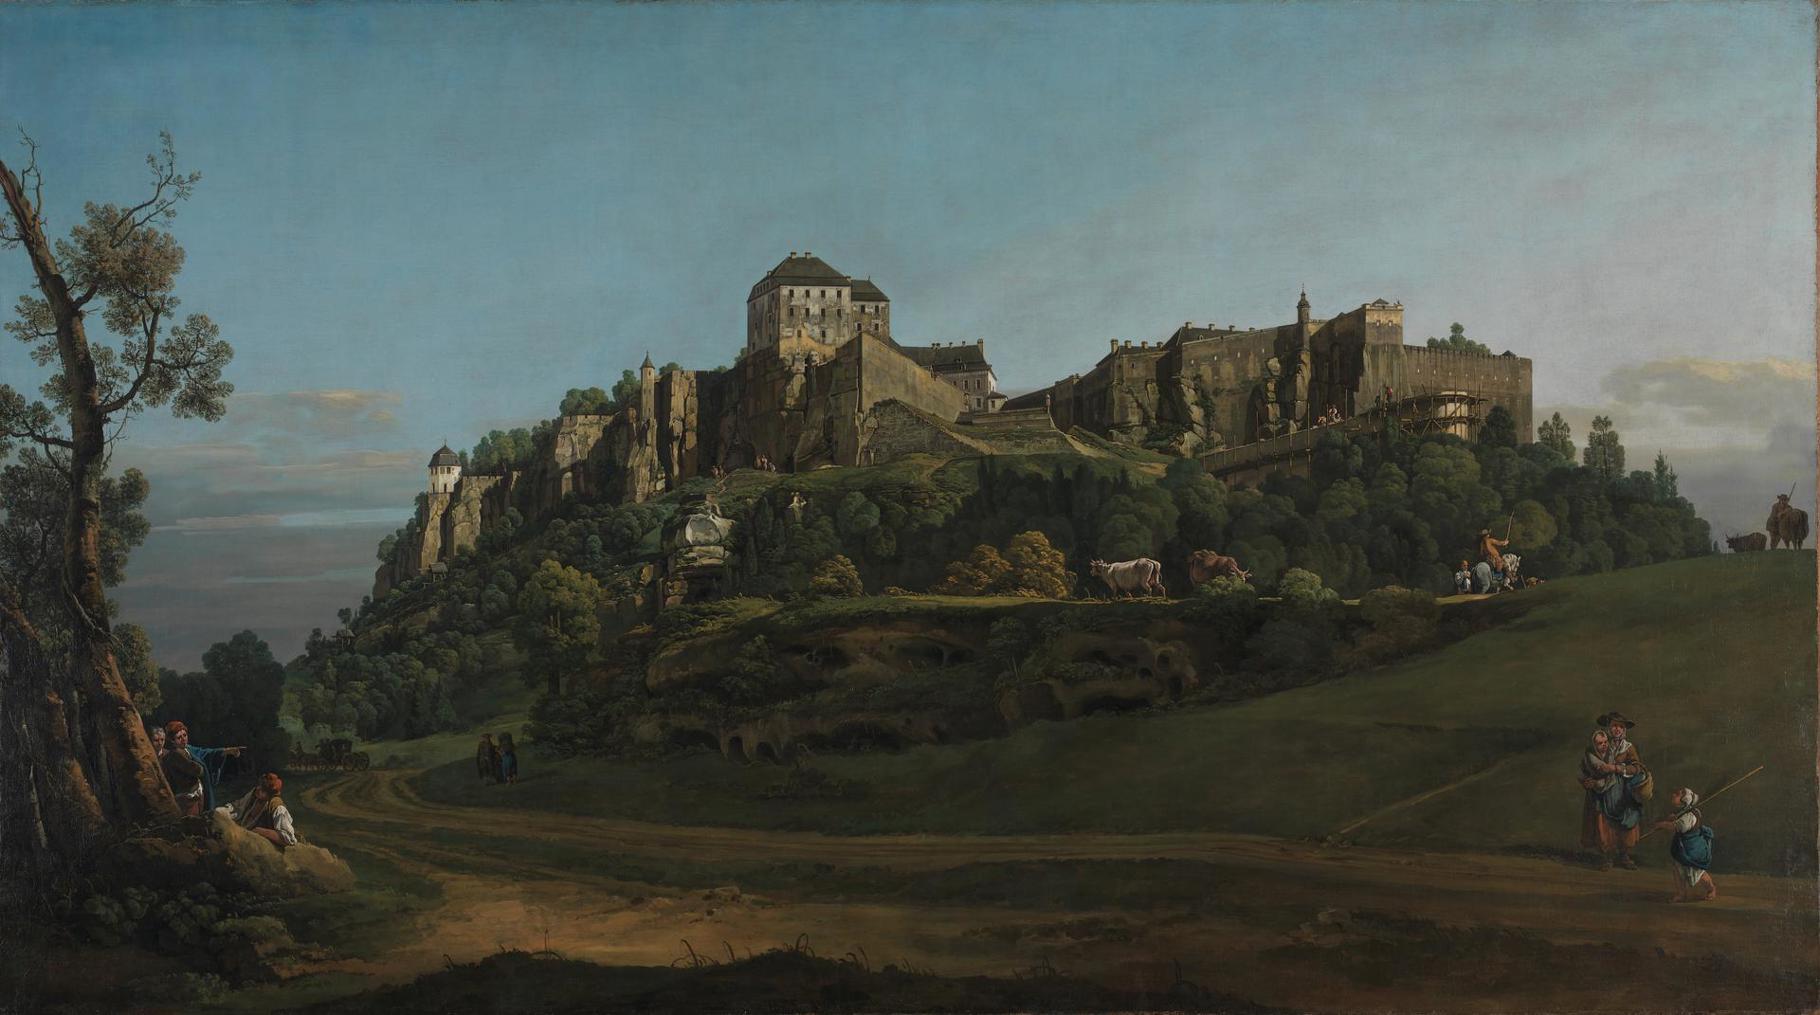 dark medieval castle painting